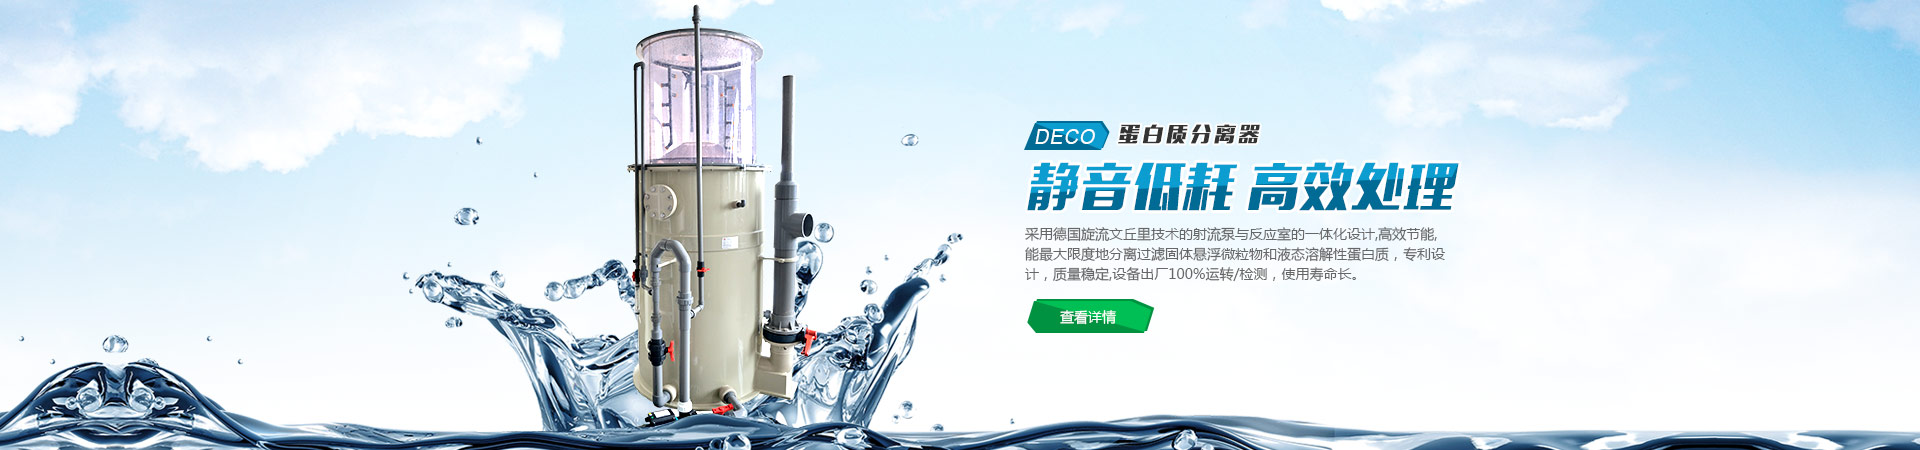 上海群协五金机电有限公司西藏南路分公司